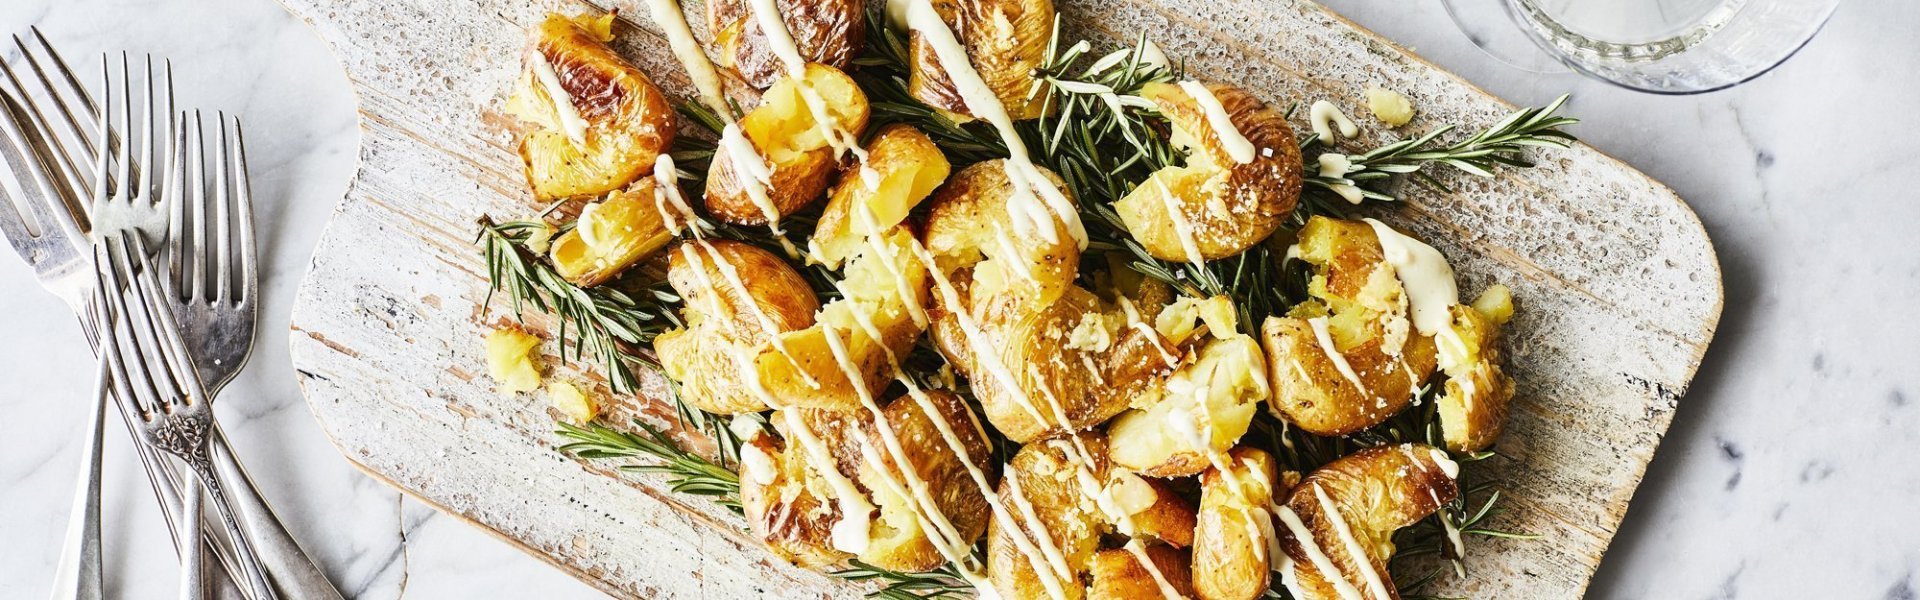 Eens een patatje in een feestjas op tafel? Serveer deze ovenaardappeltjes en ontvang veel "mmmmm-lekker complimentjes". Deze gecrushte aardappeltjes zijn geserveerd op een houten plank met een heerlijk picklessausje.  